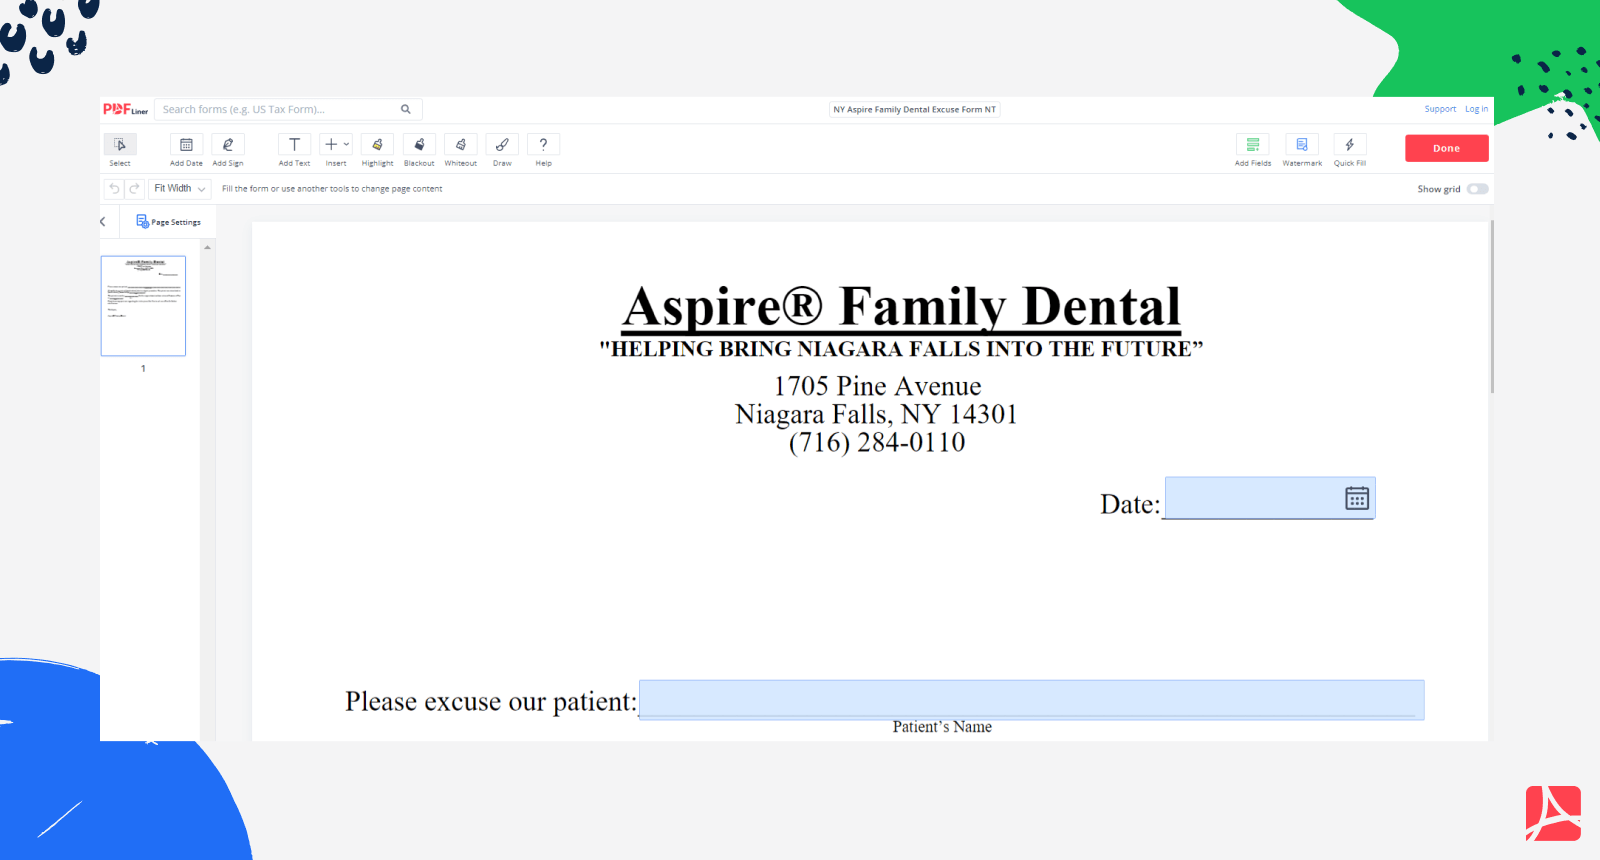 Aspire Family Dental Niagara Falls NY on PDFLiner